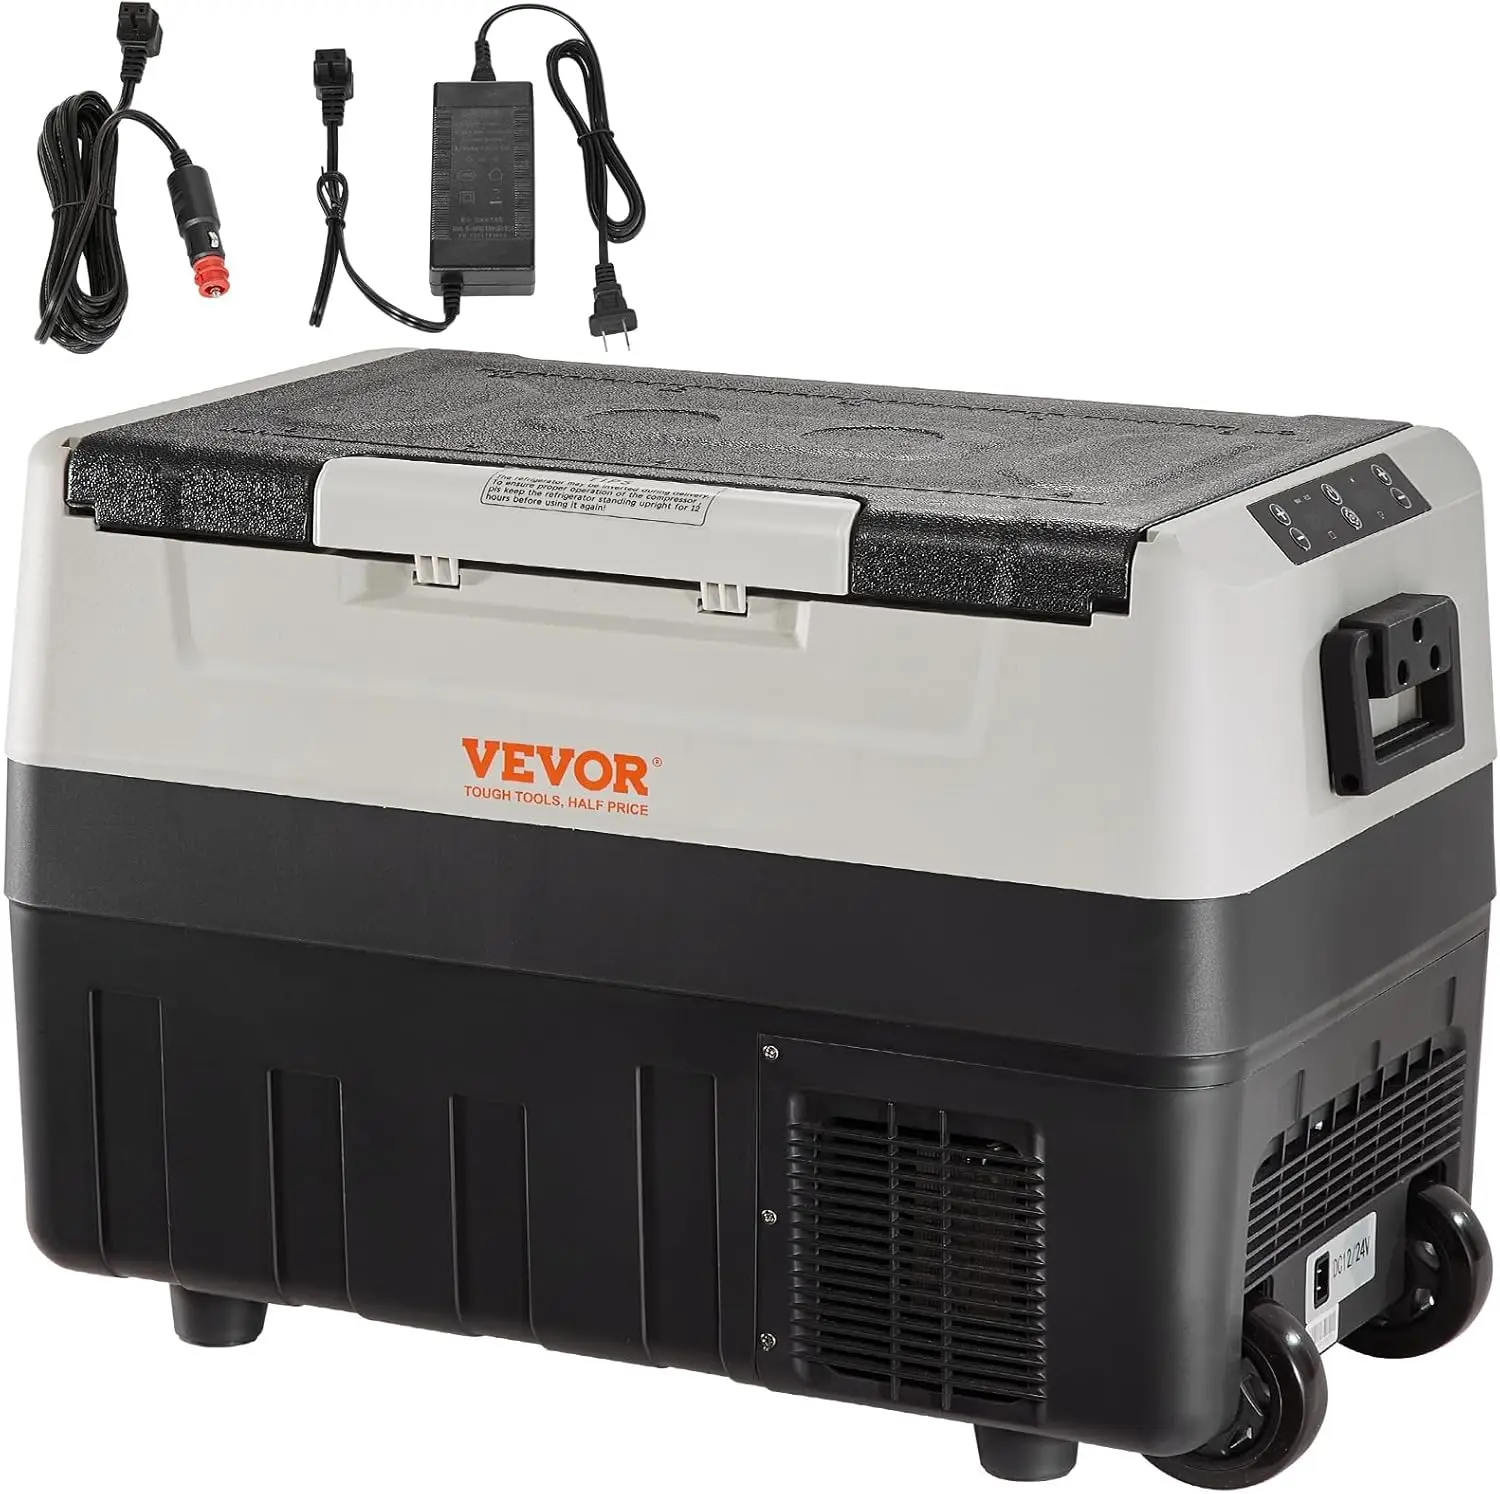 

12 Volt Car Refrigerator Fridge, 58 QT/55 L Dual Zone Portable Freezer, -4℉-50℉ Adjustable Range, 100-240V AC Compressor Cooler